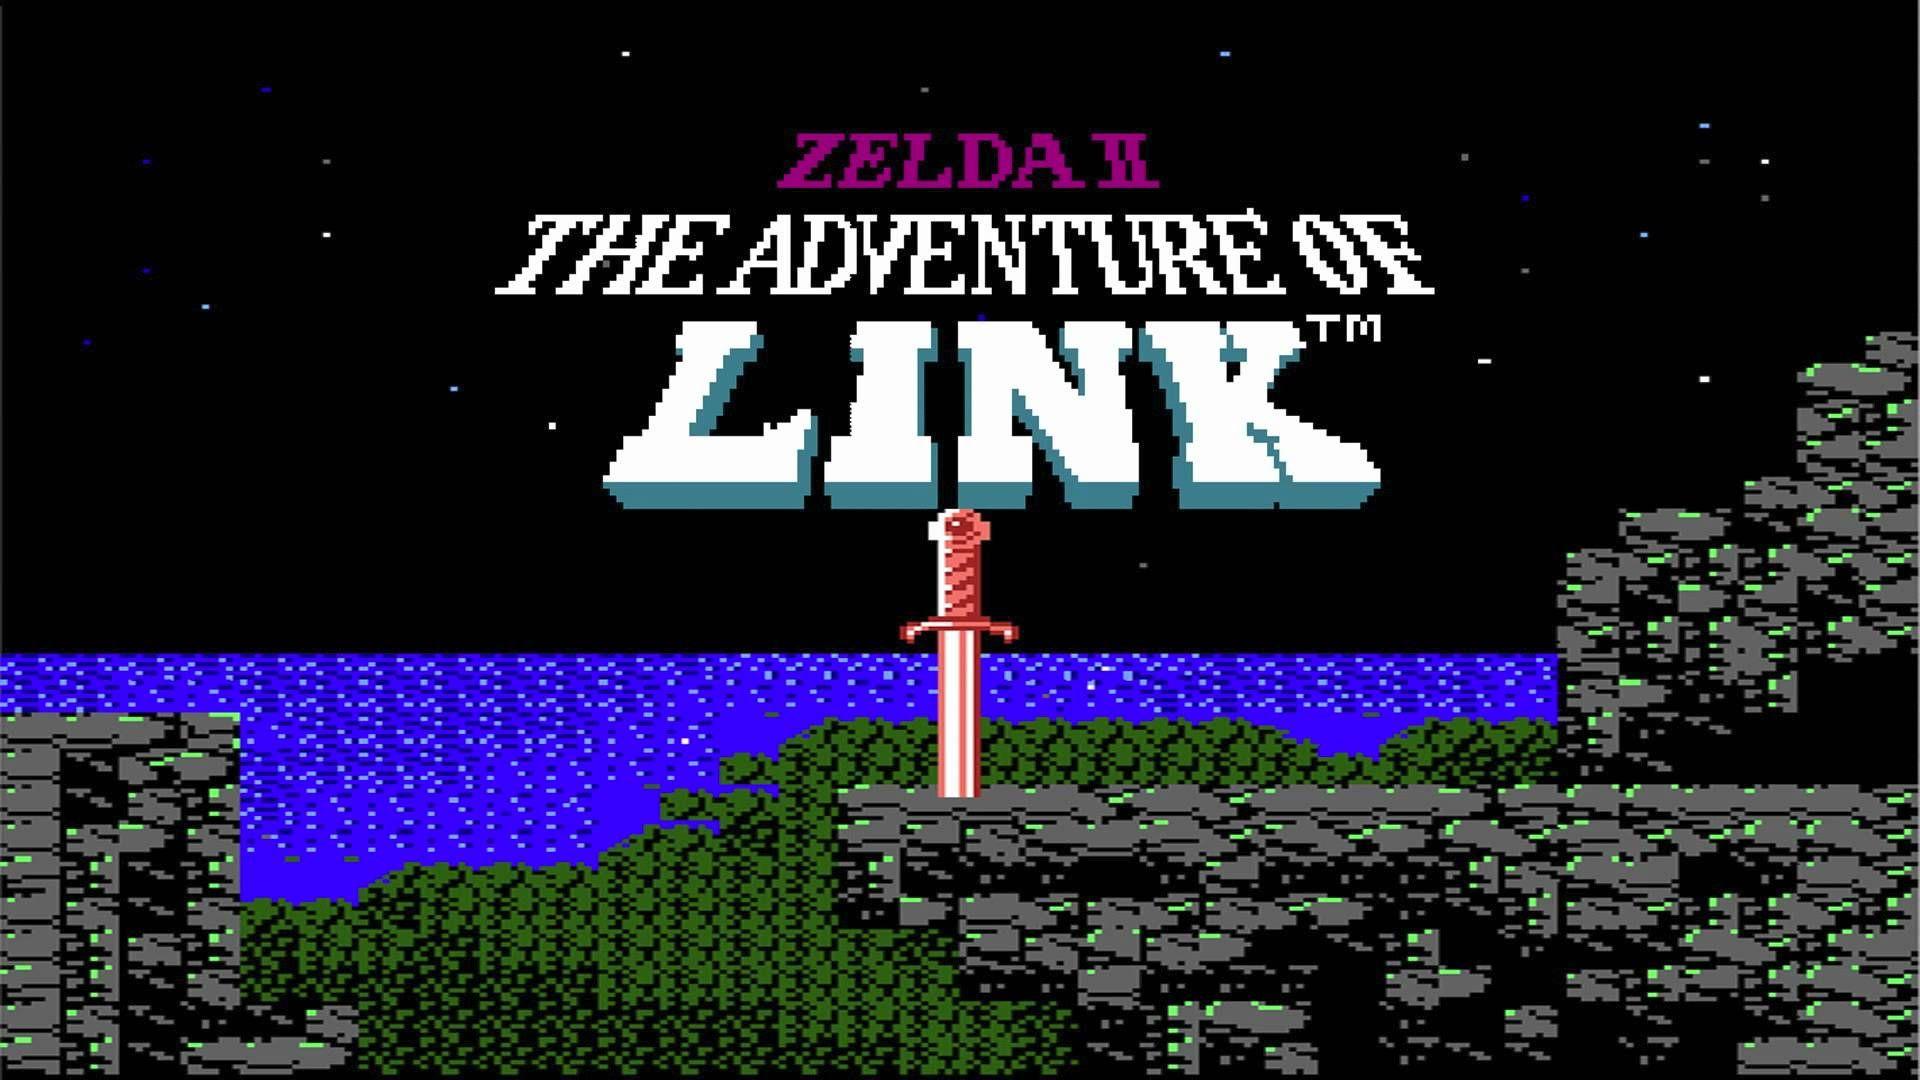 Zelda II: The Adventure Of Link. Wallpaper for desktop